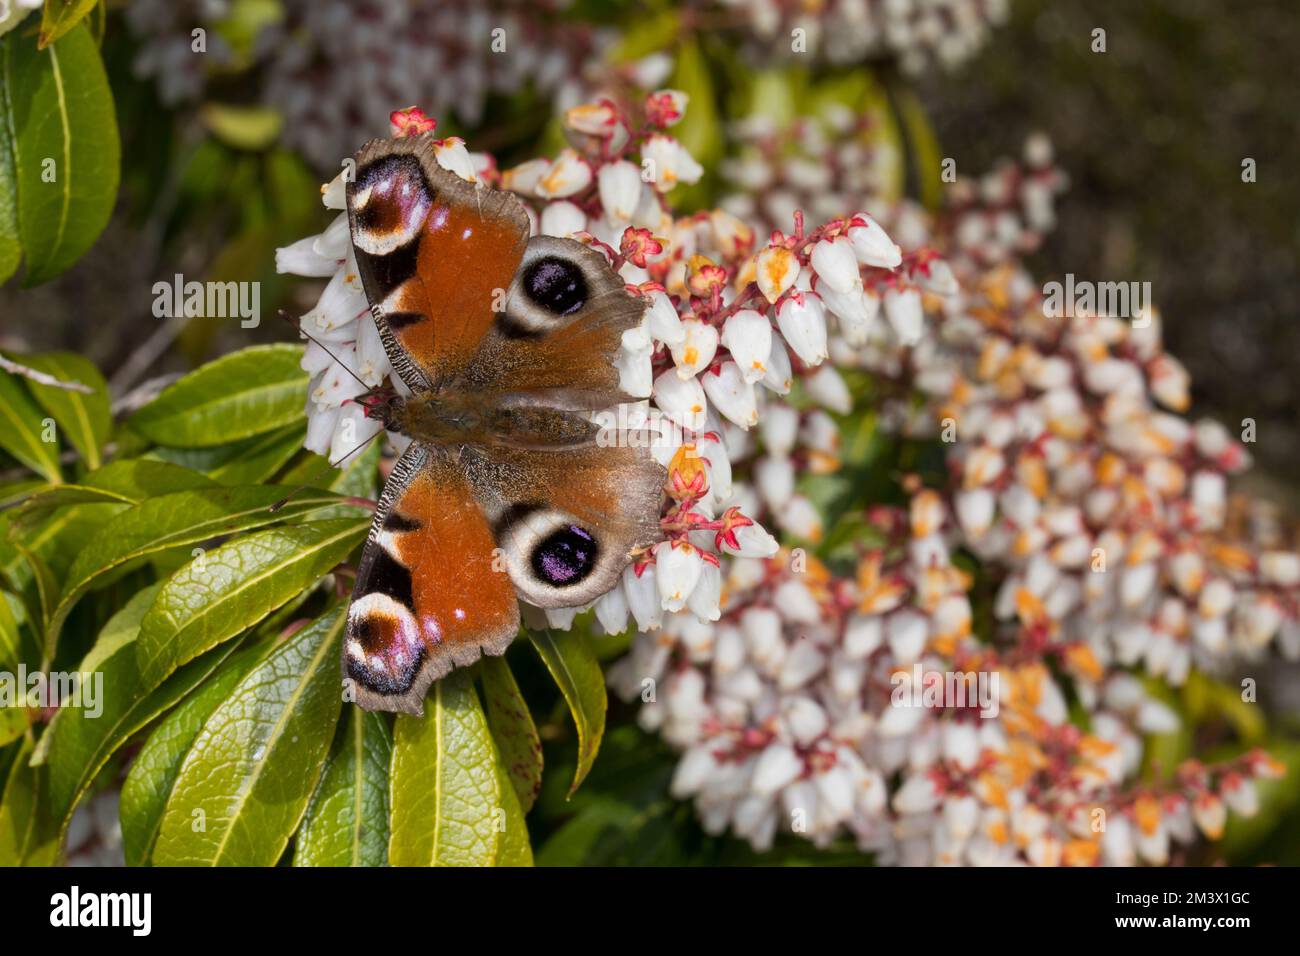 Peacock Butterfly (Aglaiis io) adulte se nourrissant sur des fleurs de Pieris japonica dans un jardin au printemps. Powys, pays de Galles. Mars. Banque D'Images